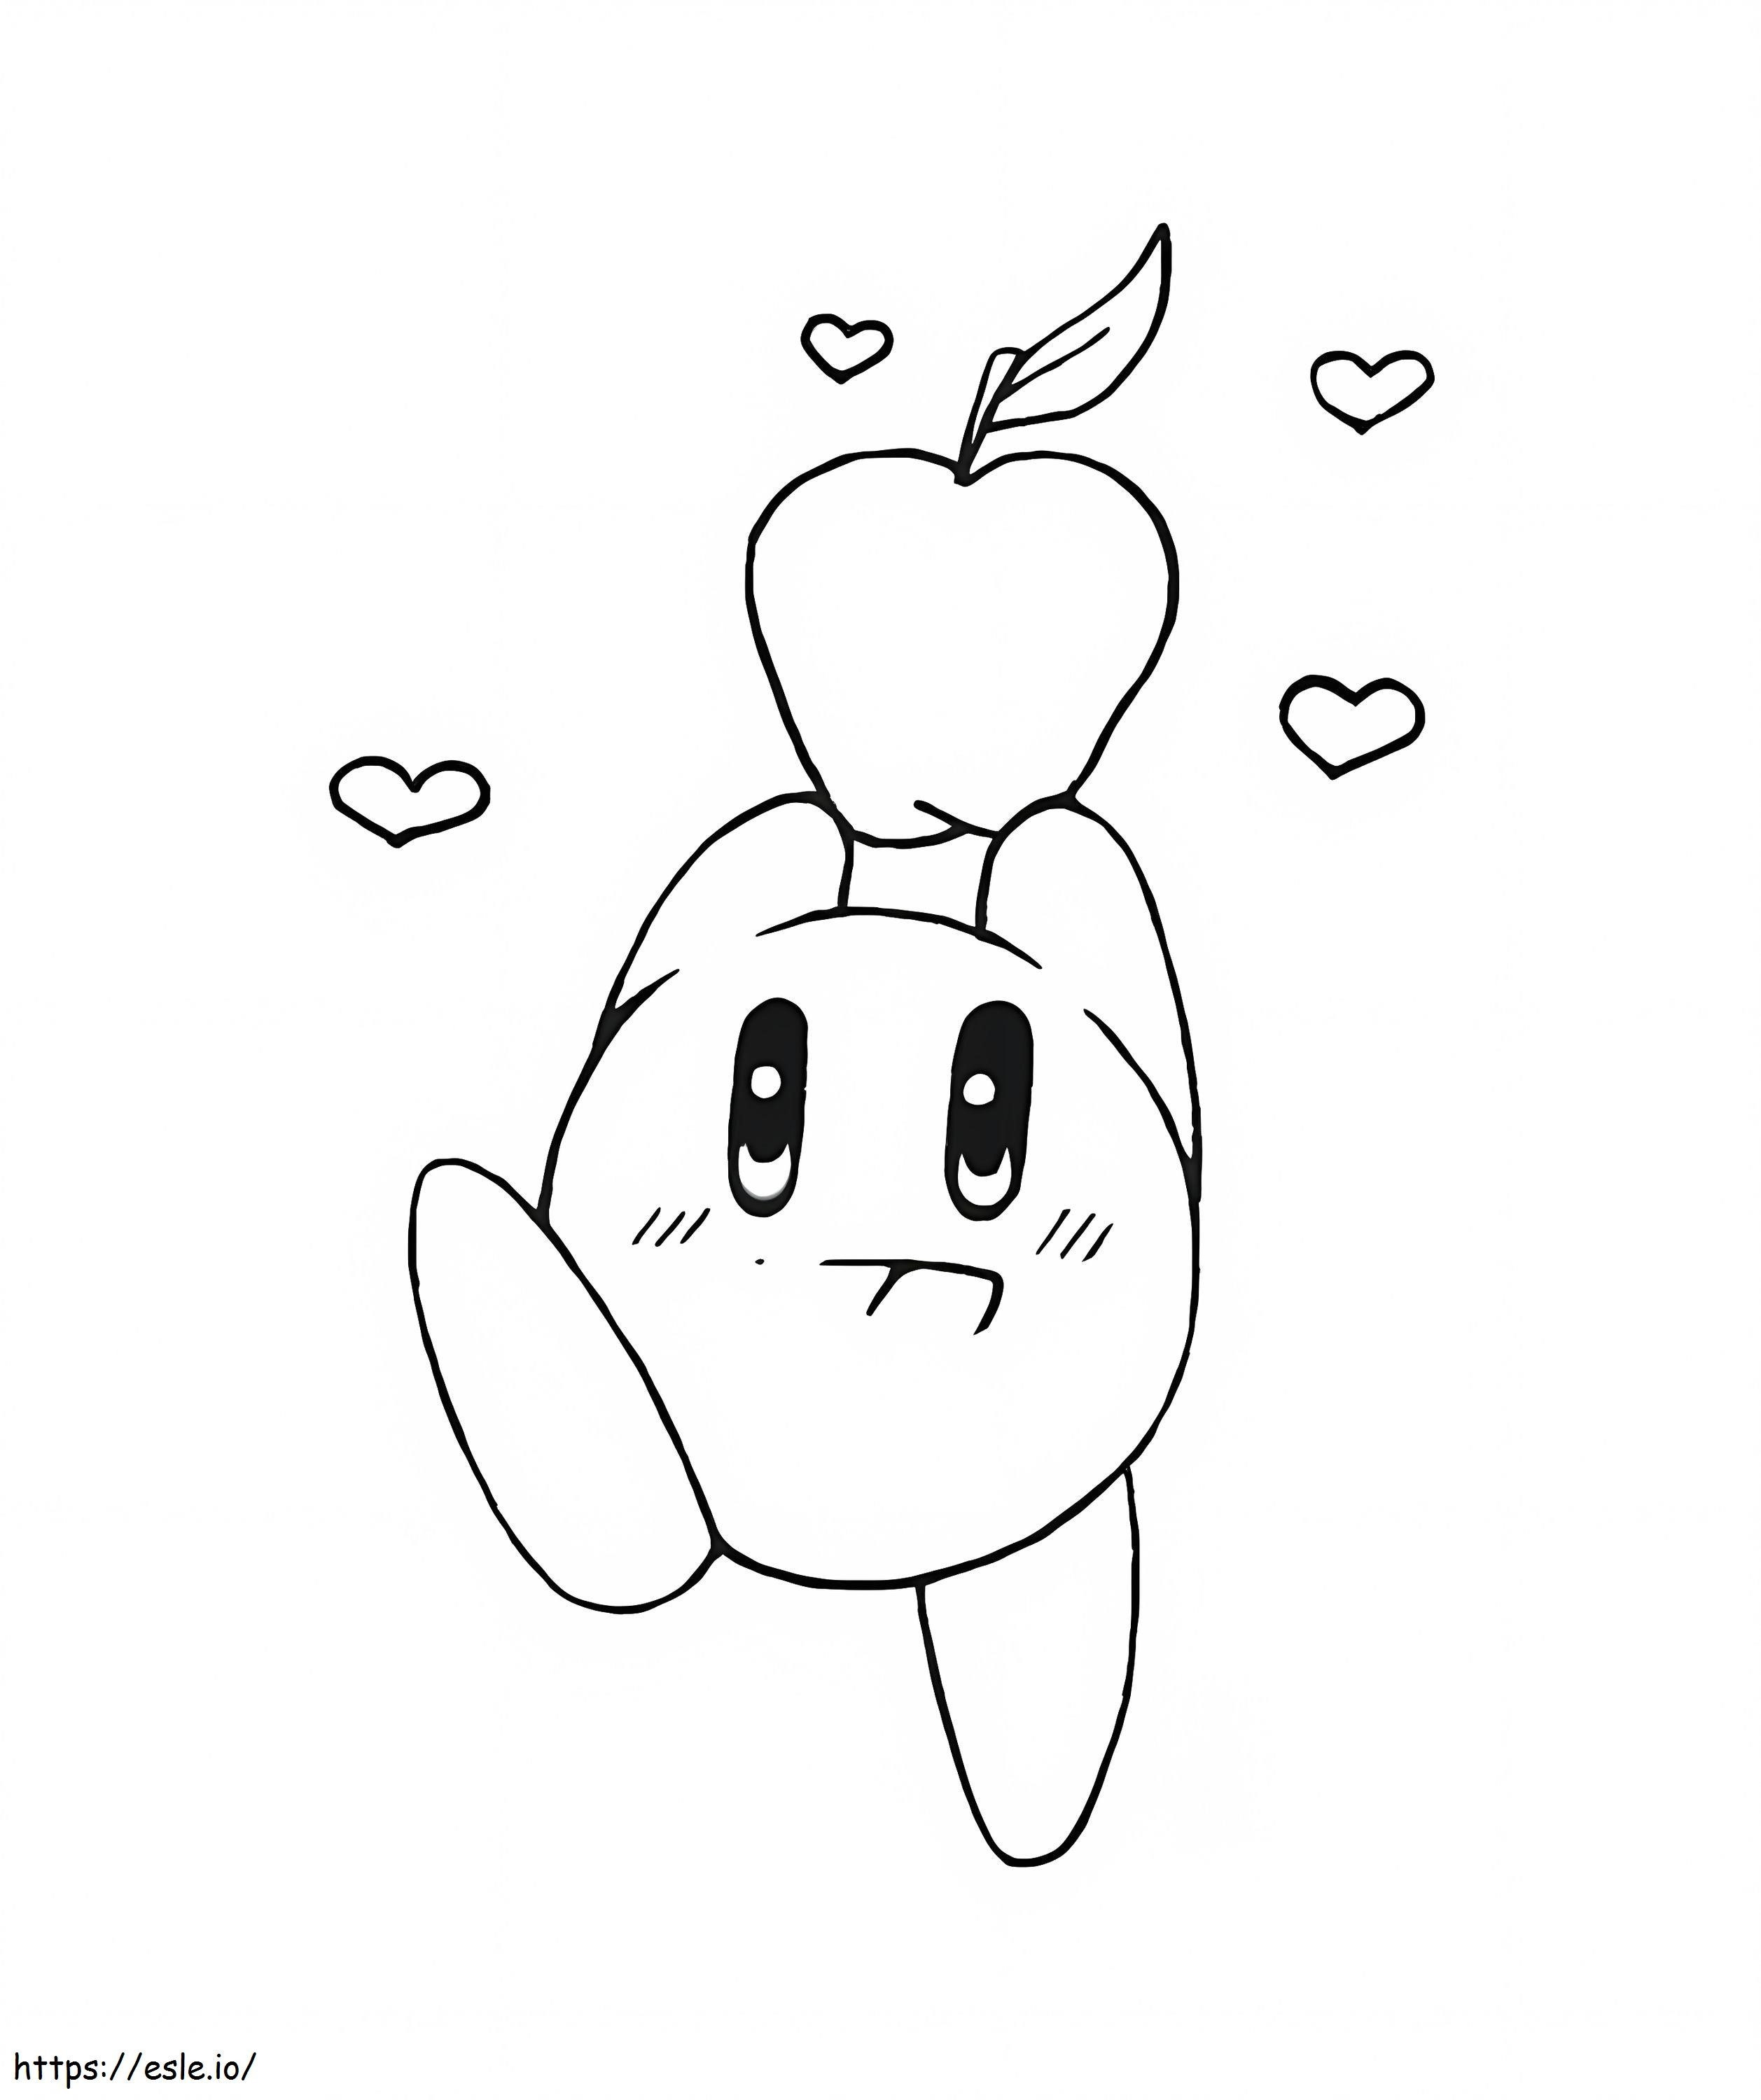 Kirby met een appel kleurplaat kleurplaat